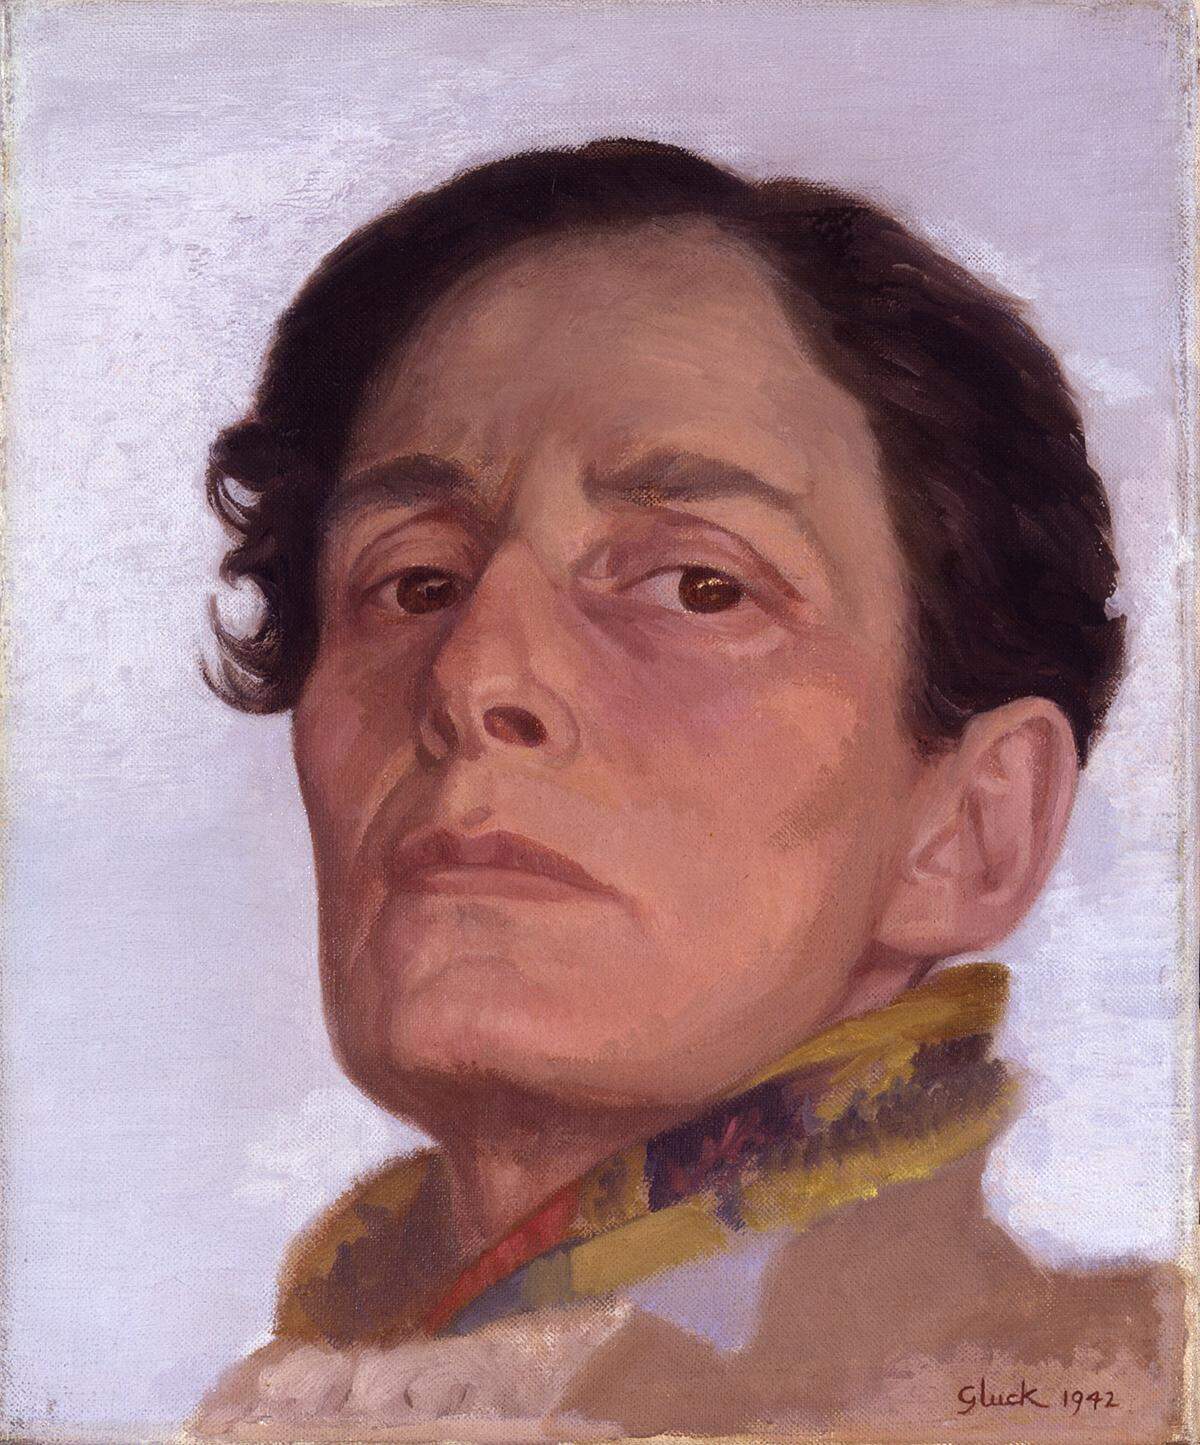 Teil der Ausstellung ist auch Kunst von Hannah Gluckstein, die sich Gluck nannte - ohne geschlechtsbestimmendes "Miss" davor. Sie stammte aus einer reichen Familie und porträtierte viele Frauen aus der Upper Class.  Hannah Gluckstein (1985-1978): "Gluck", 1942